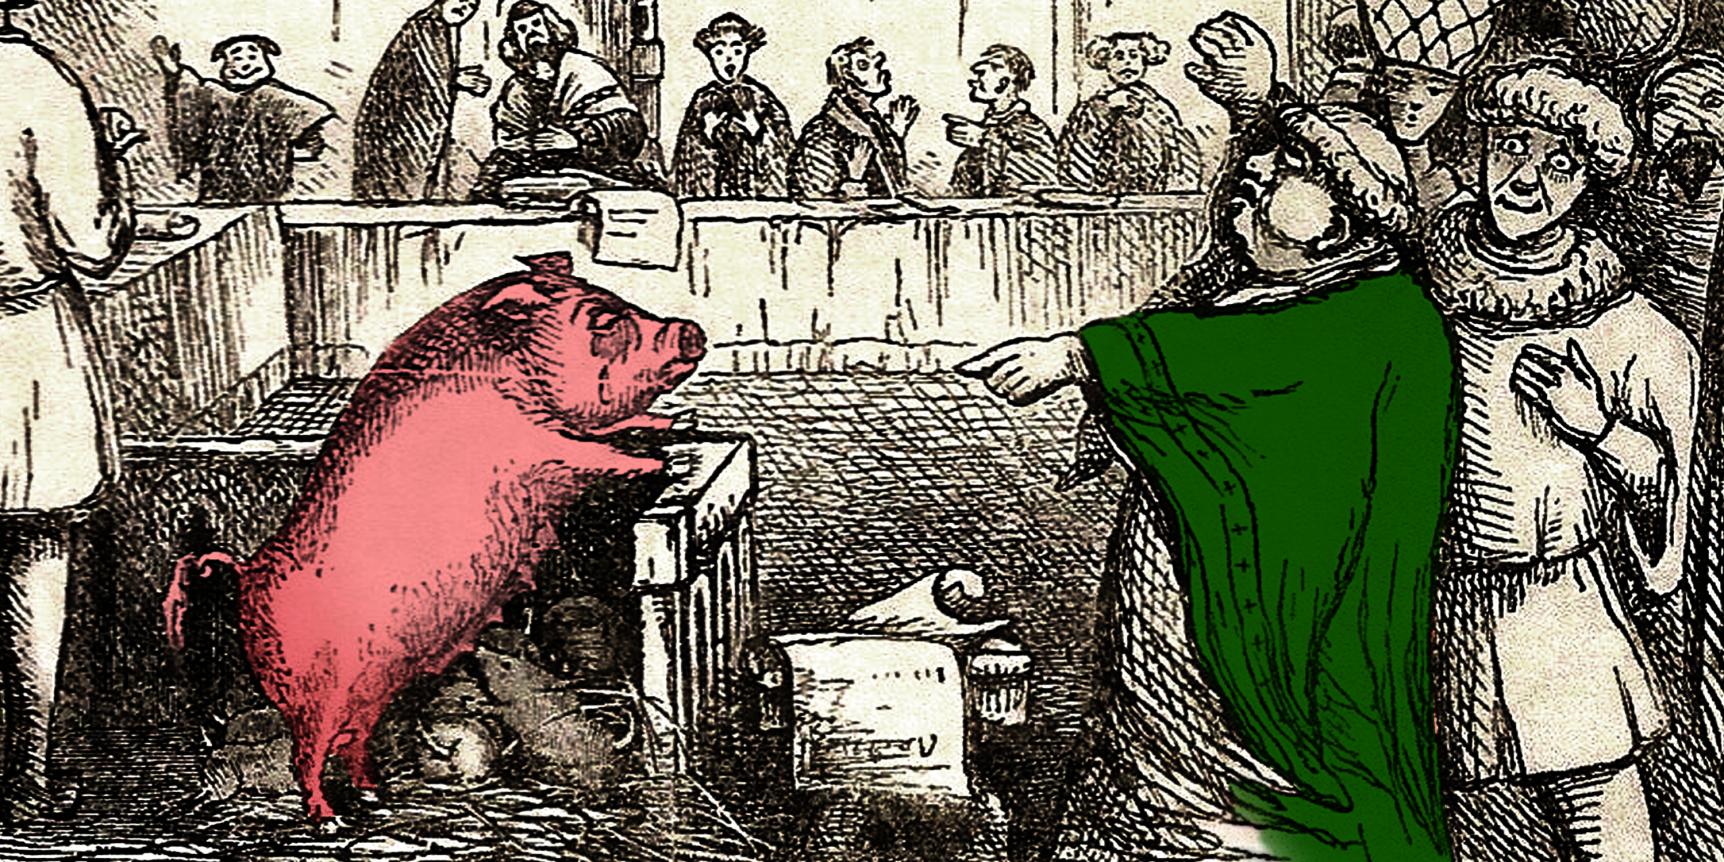 Франция свинья. Средневековье суд над свиньей. Средние века суд над животным. Суд над животными в средневековье. Суды над животными в средние века.